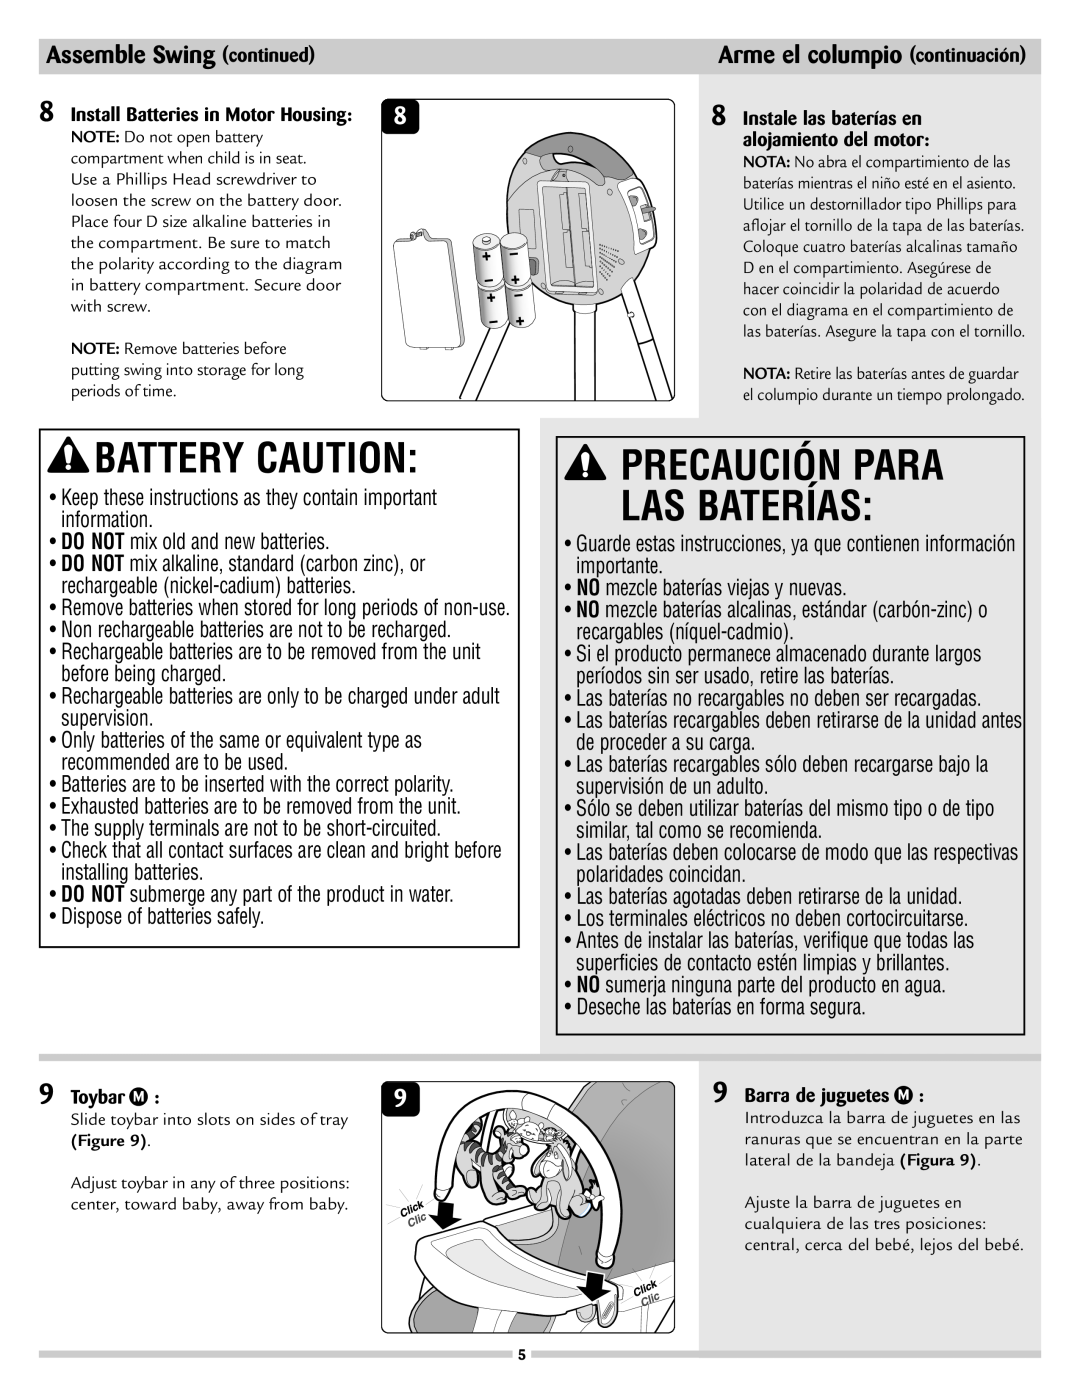 Disney 53020 manual Battery Caution, Precaución Para Las Baterías, Arme el columpio continuación, Assemble Swing continued 